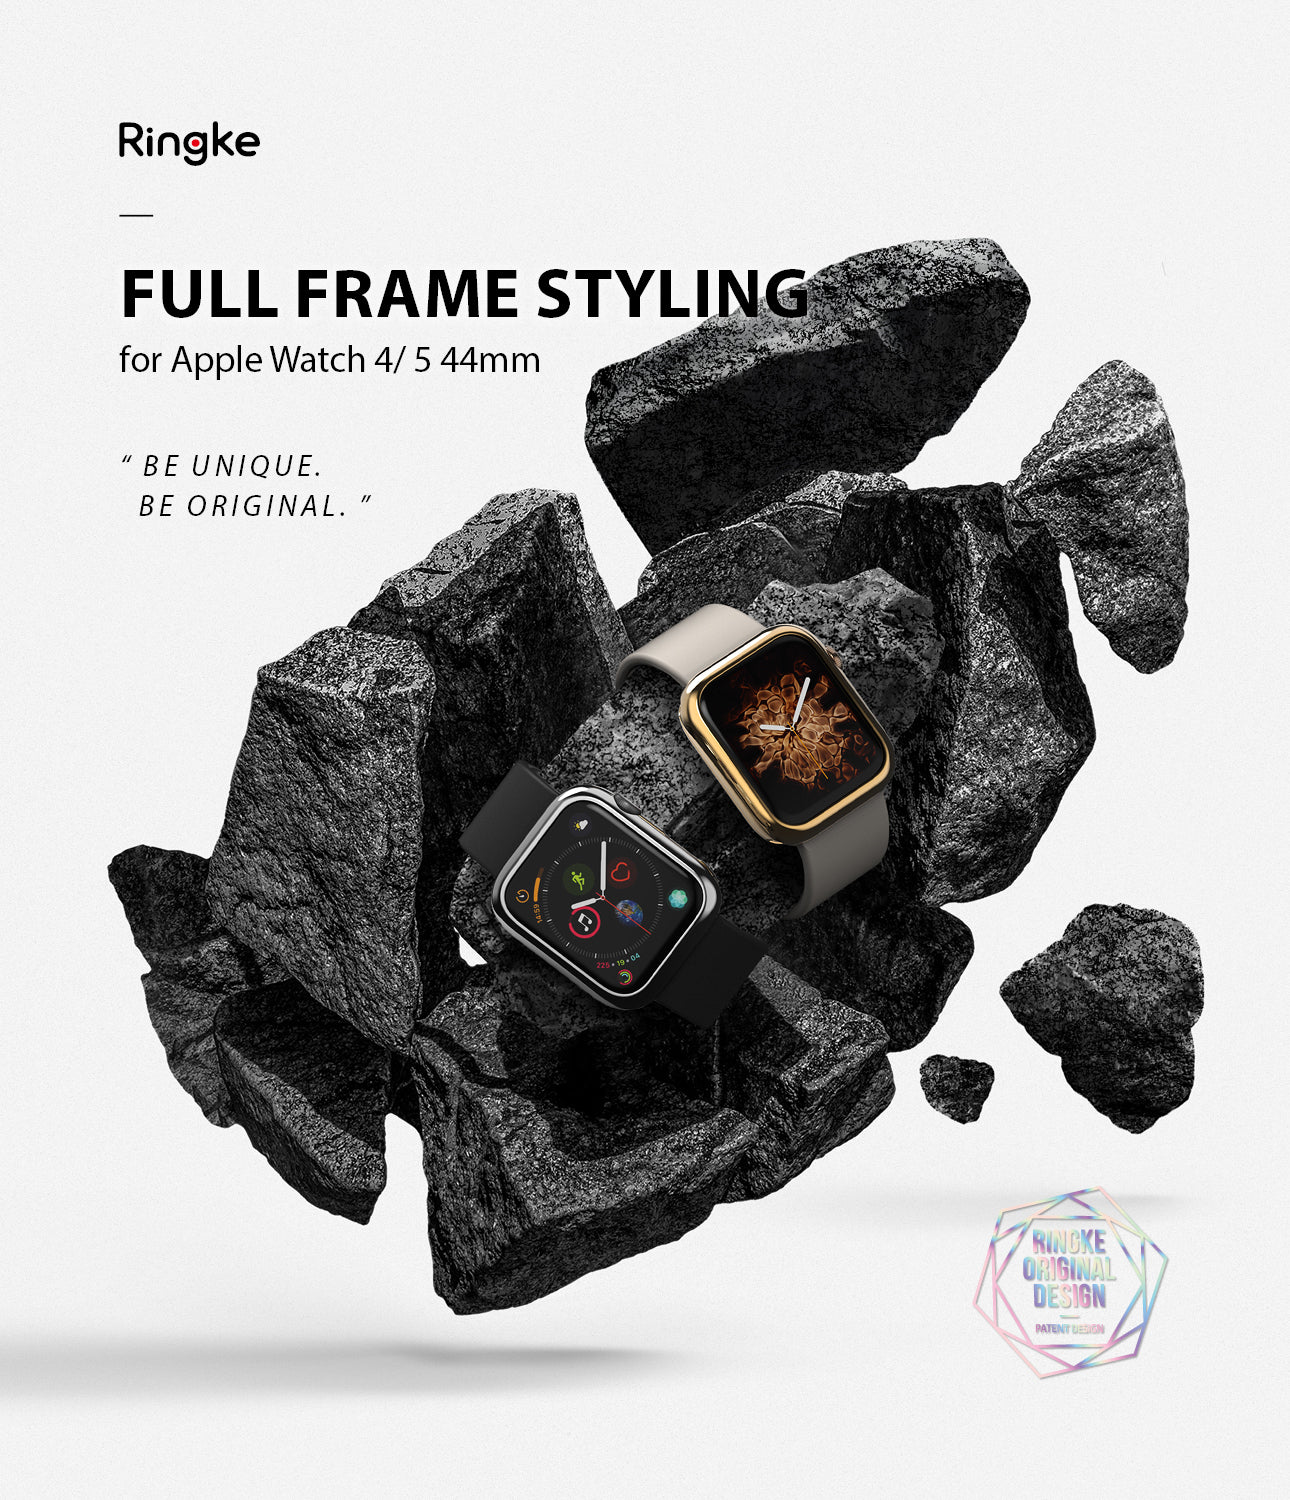 ringke full frame styling for apple watch 4/5 44mm - 44-71